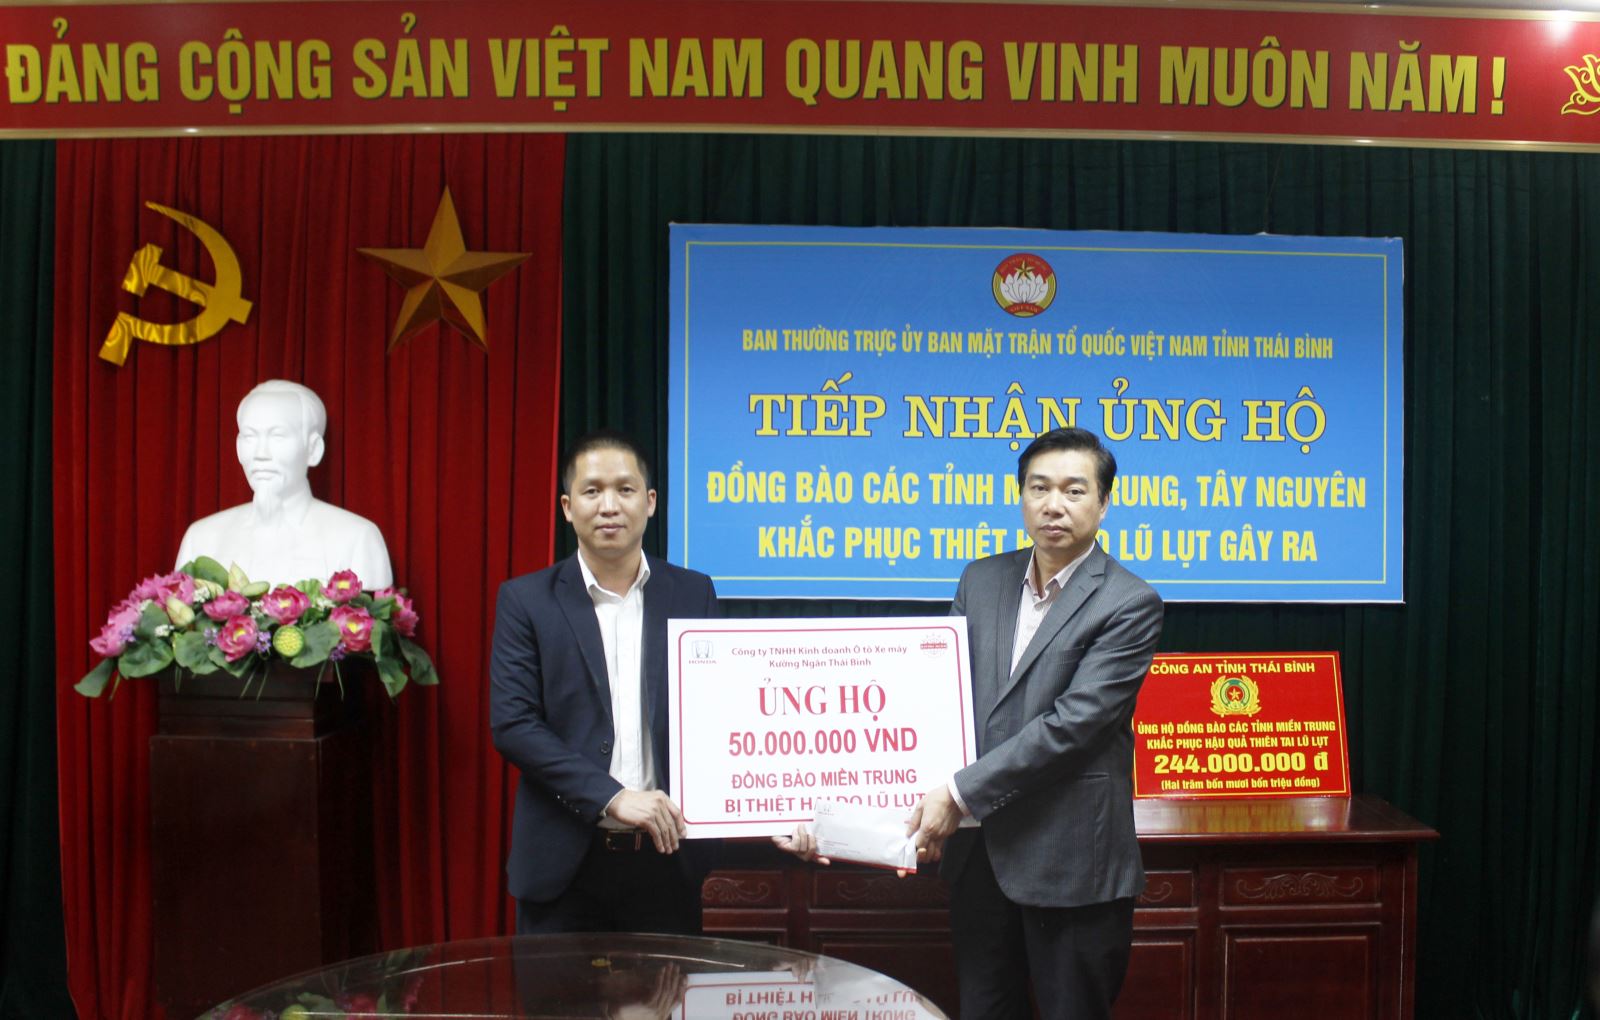 Honda Ô tô Thái Bình - Hoàng Diệu trao số tiền ủng hộ đồng bào miền trung cho Ủy ban Mặt trận Tổ quốc tỉnh Thái Bình.